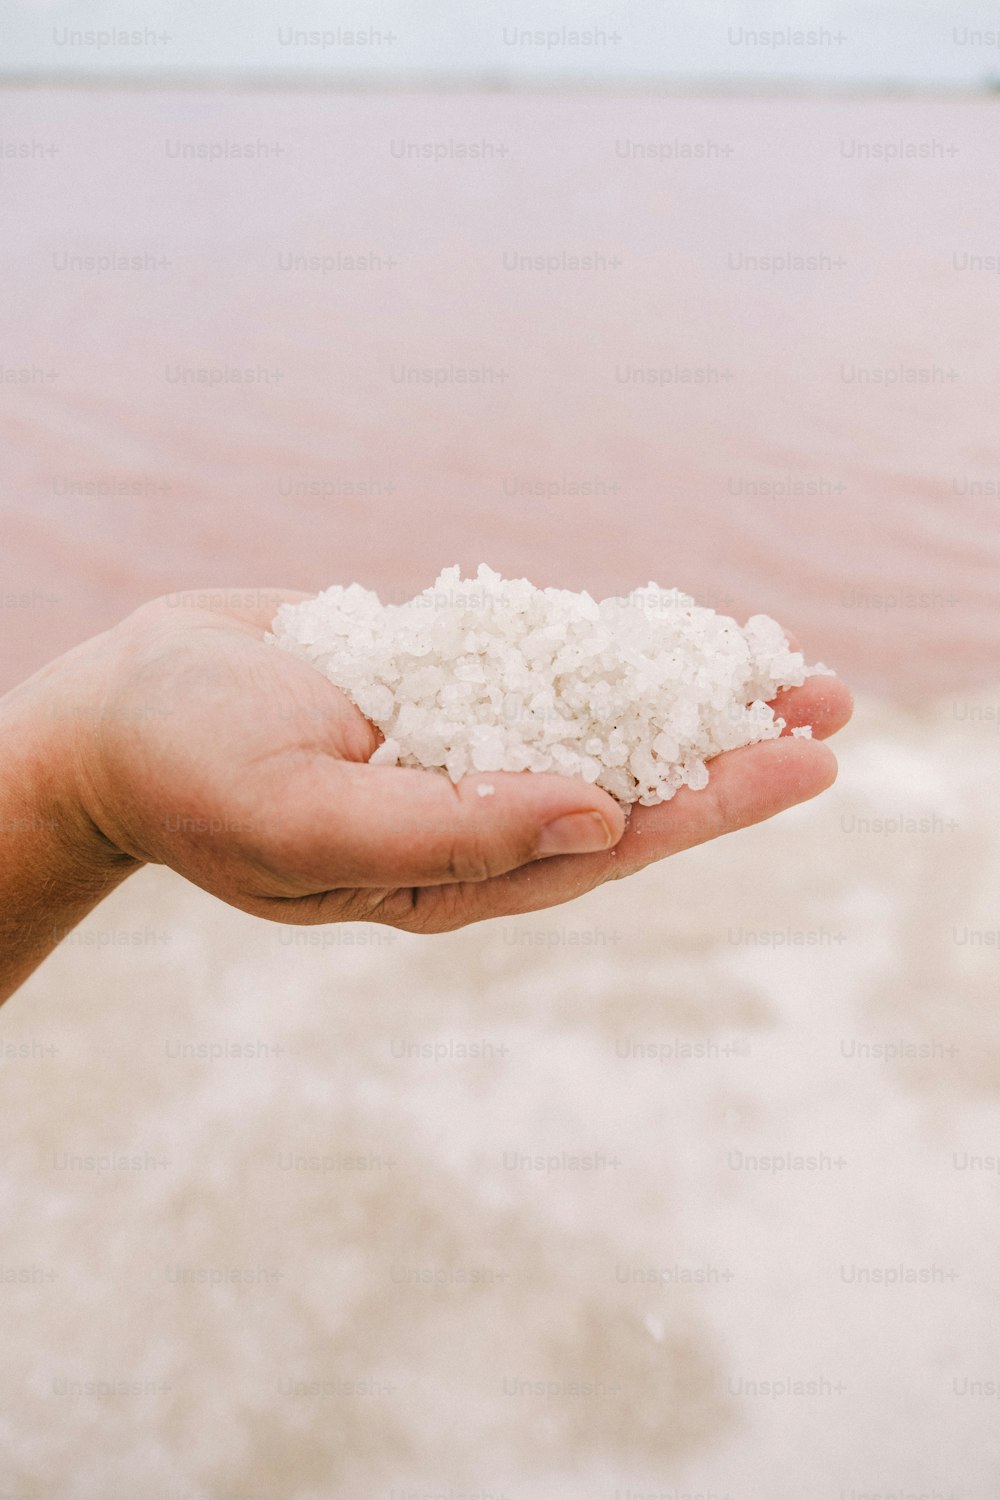 una persona sosteniendo un puñado de sal en la mano